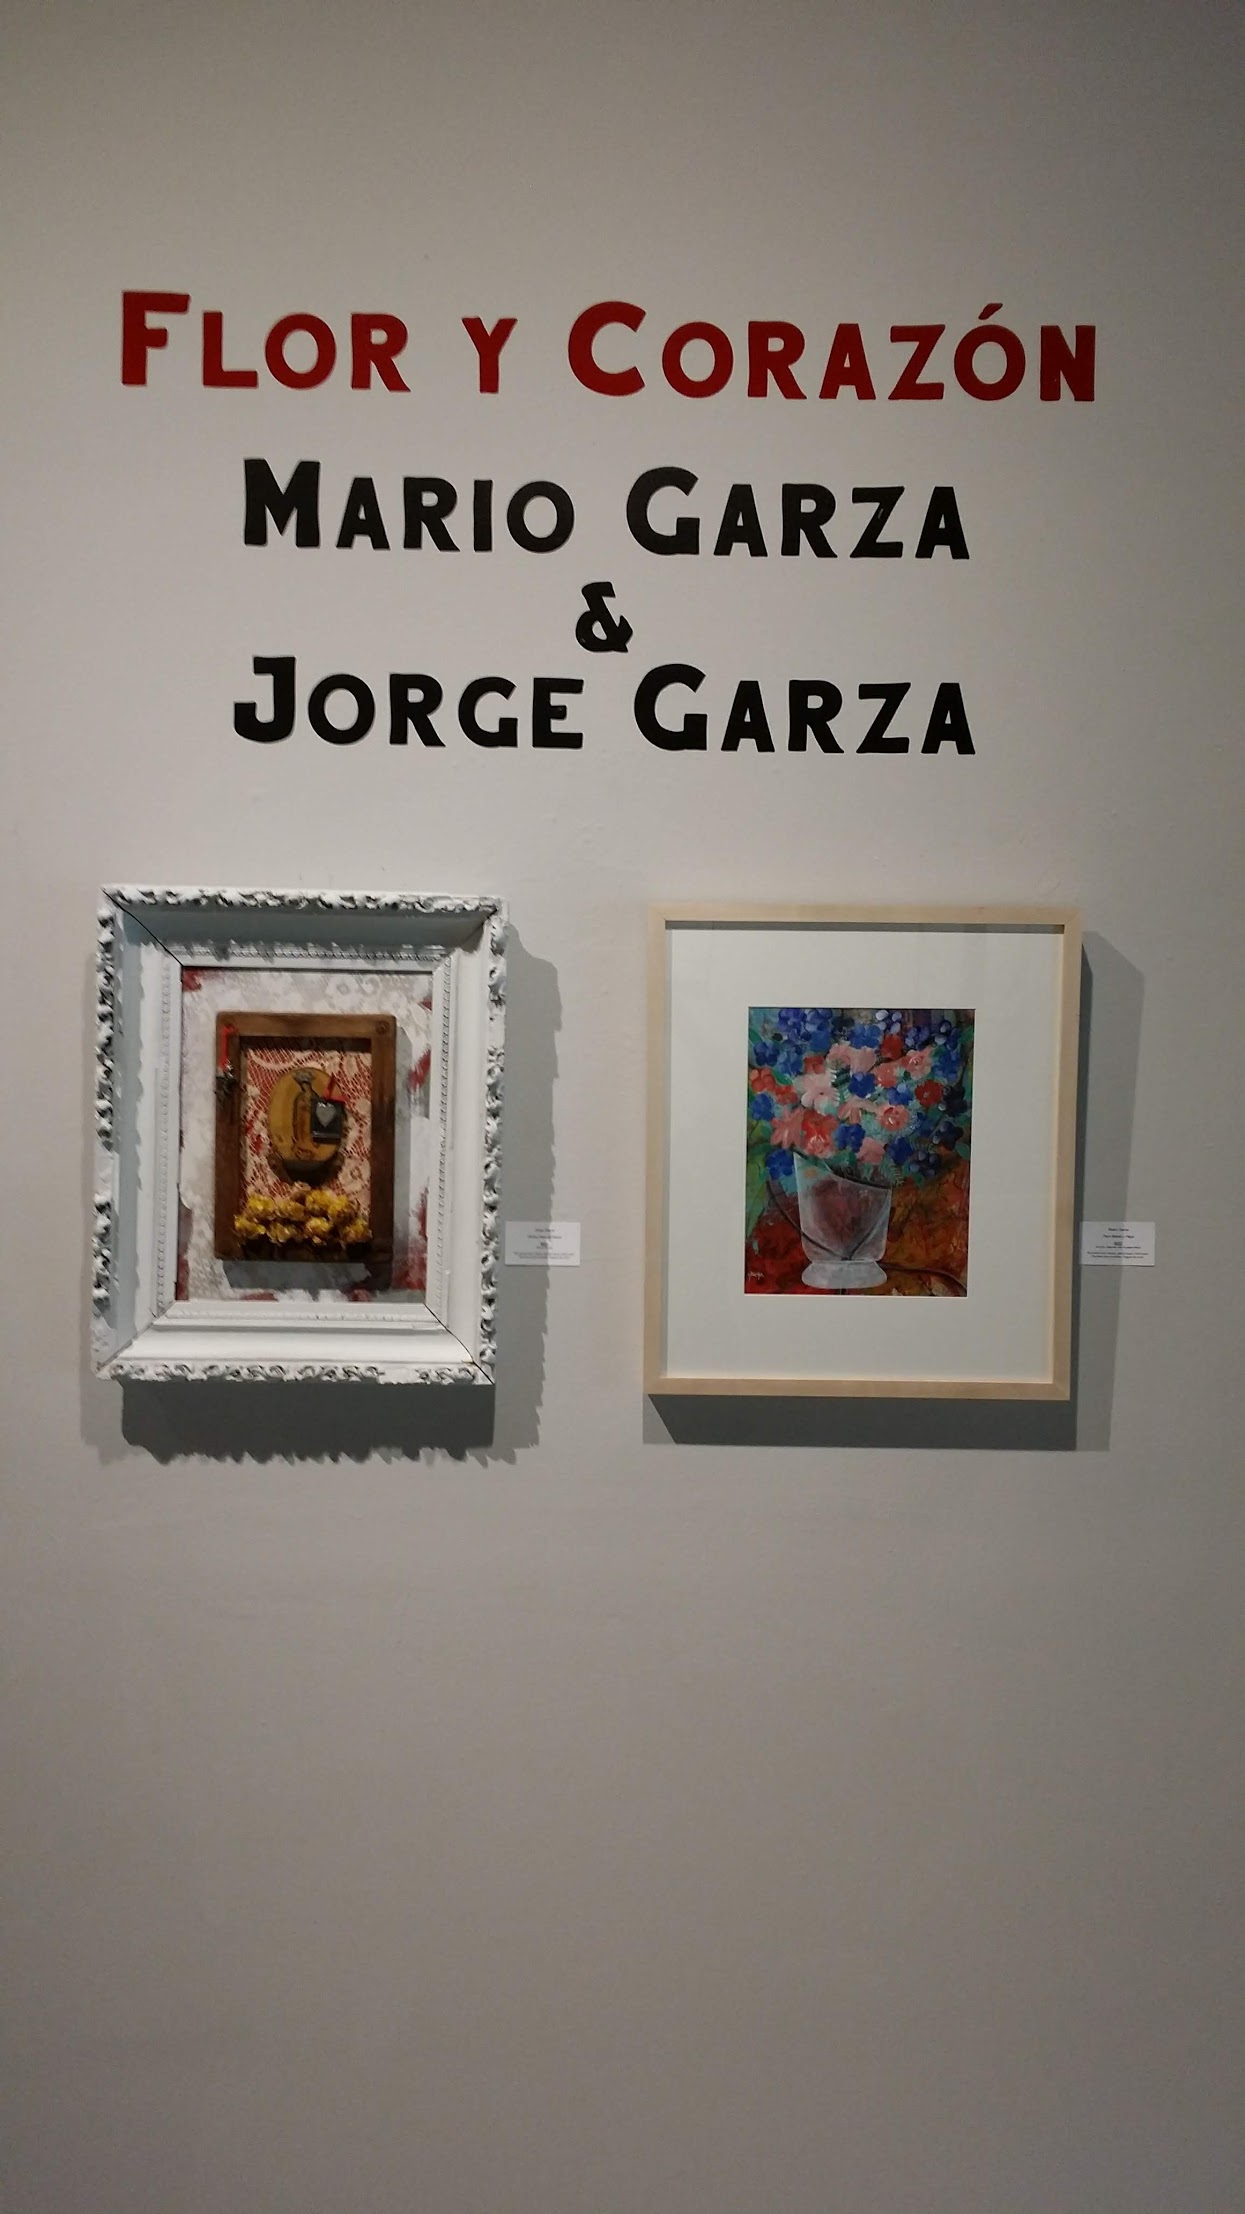 Flor y Corazon” Mario Garza & Jorge Garza - Centro Cultural Aztlan